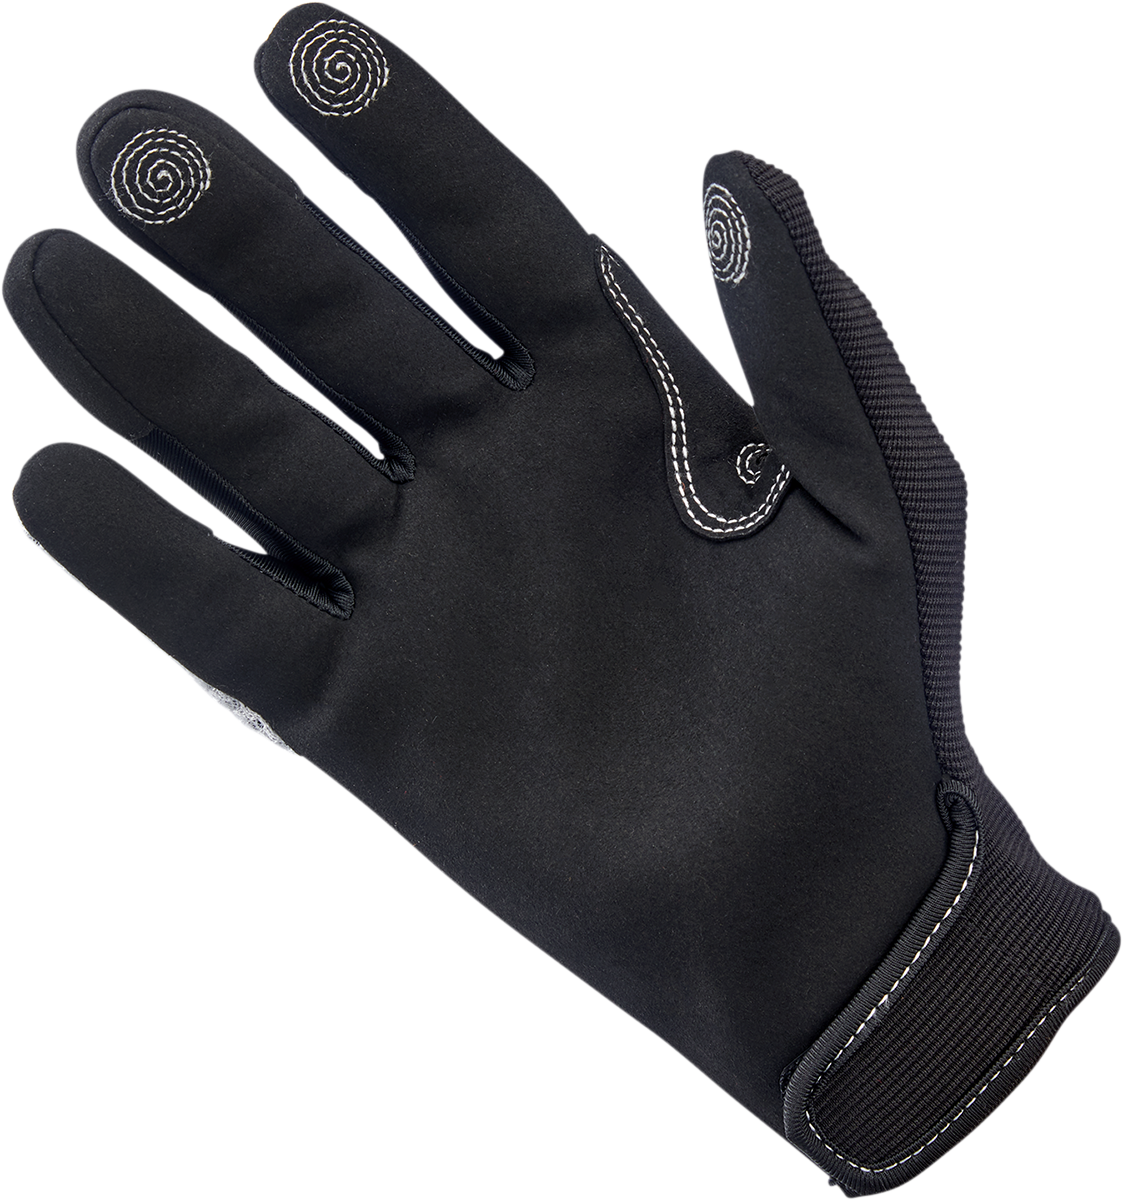 BILTWELL Anza Gloves - White/Black